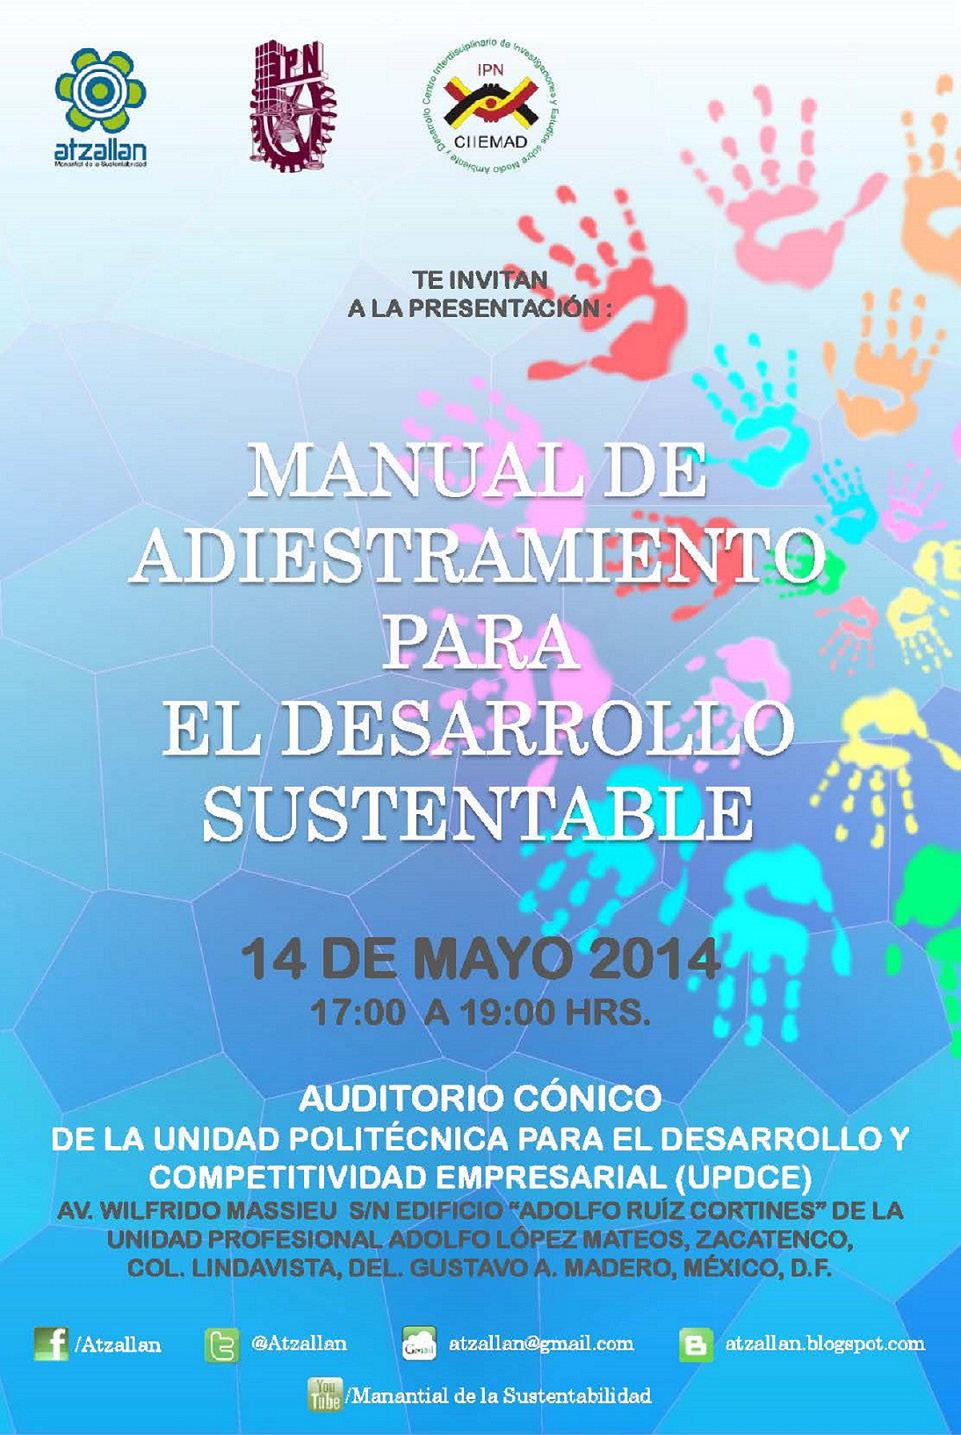 Se presentó el Manual de Adiestramiento para el Desarrollo Sustentable Mayo de 2014 Se organizó y llevo a cabo en el auditorio Cónico de la Unidad Politécnica para el Desarrollo y Competitividad